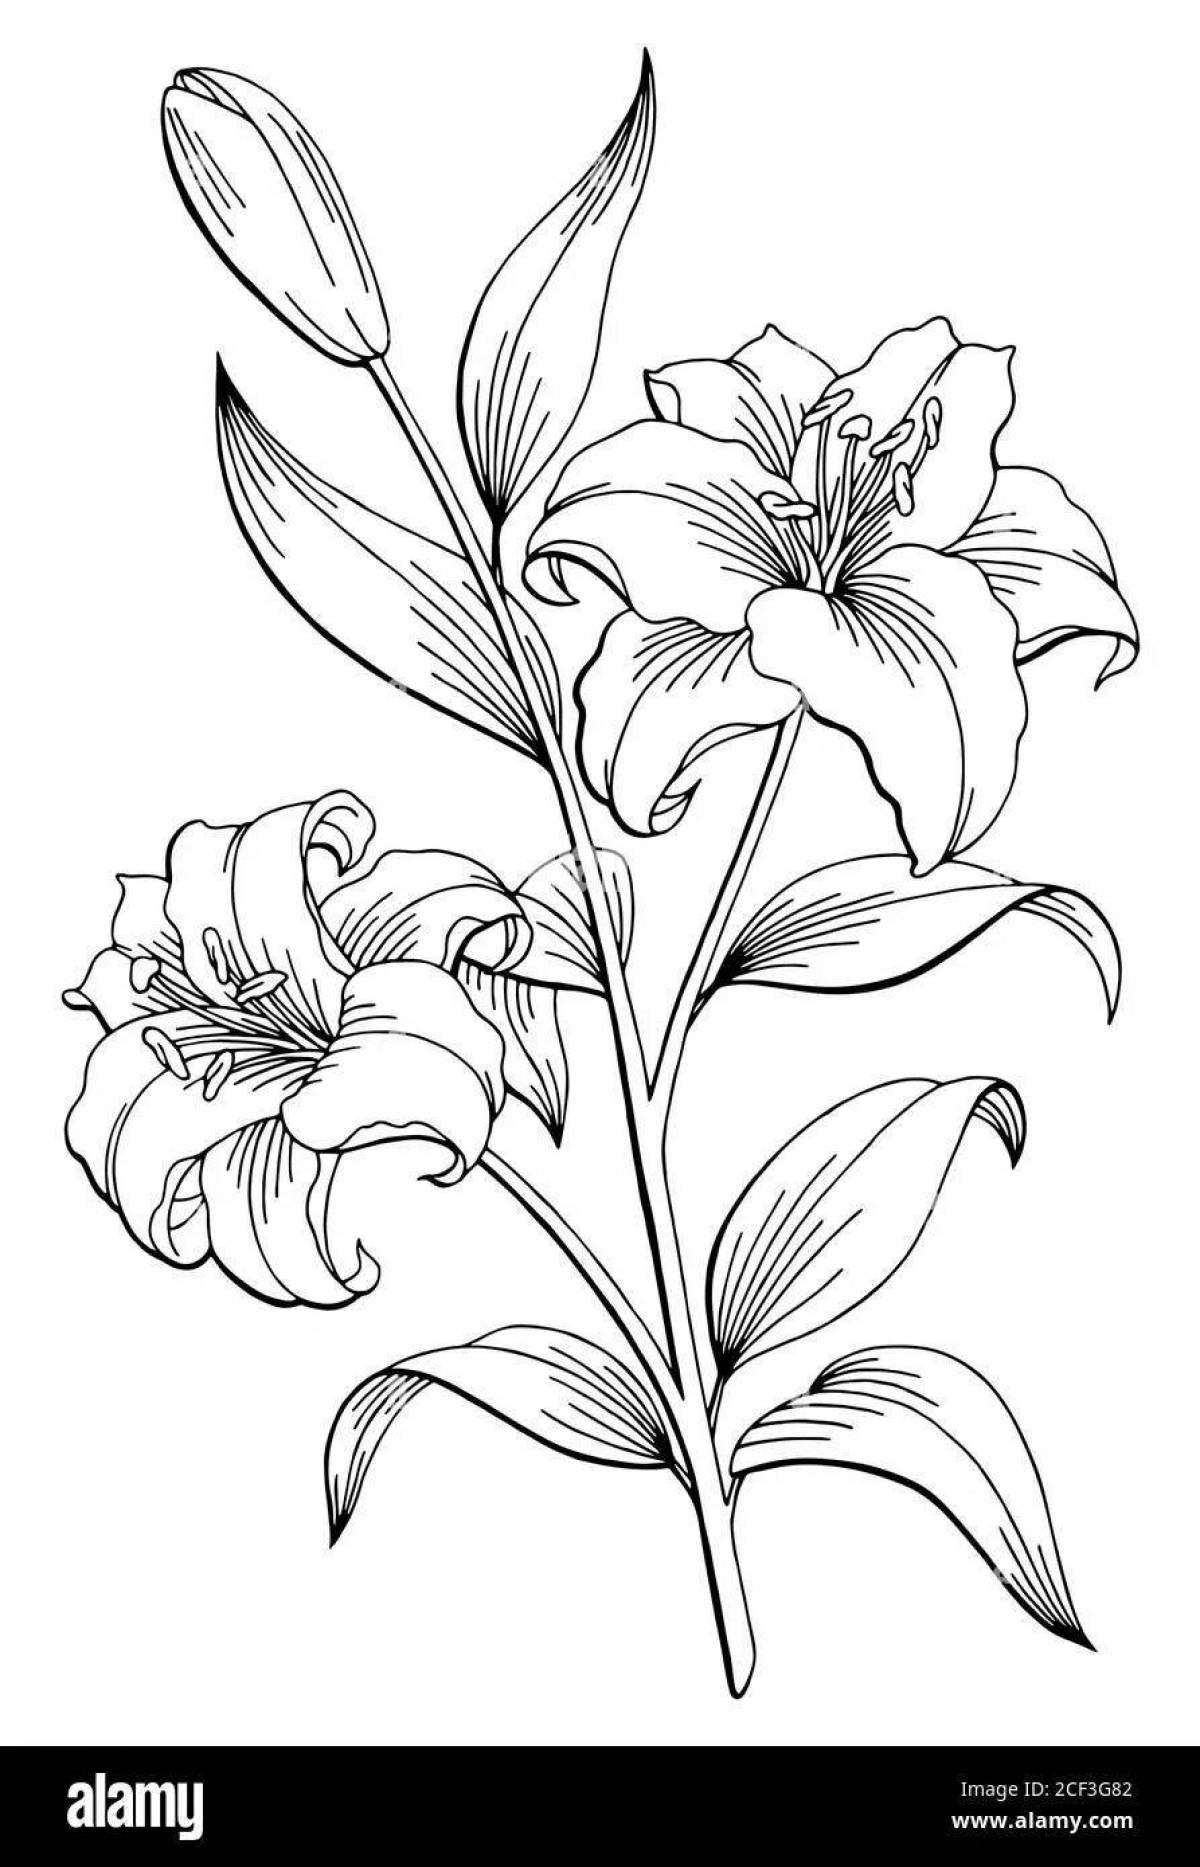 Раскраска живая лили саранка